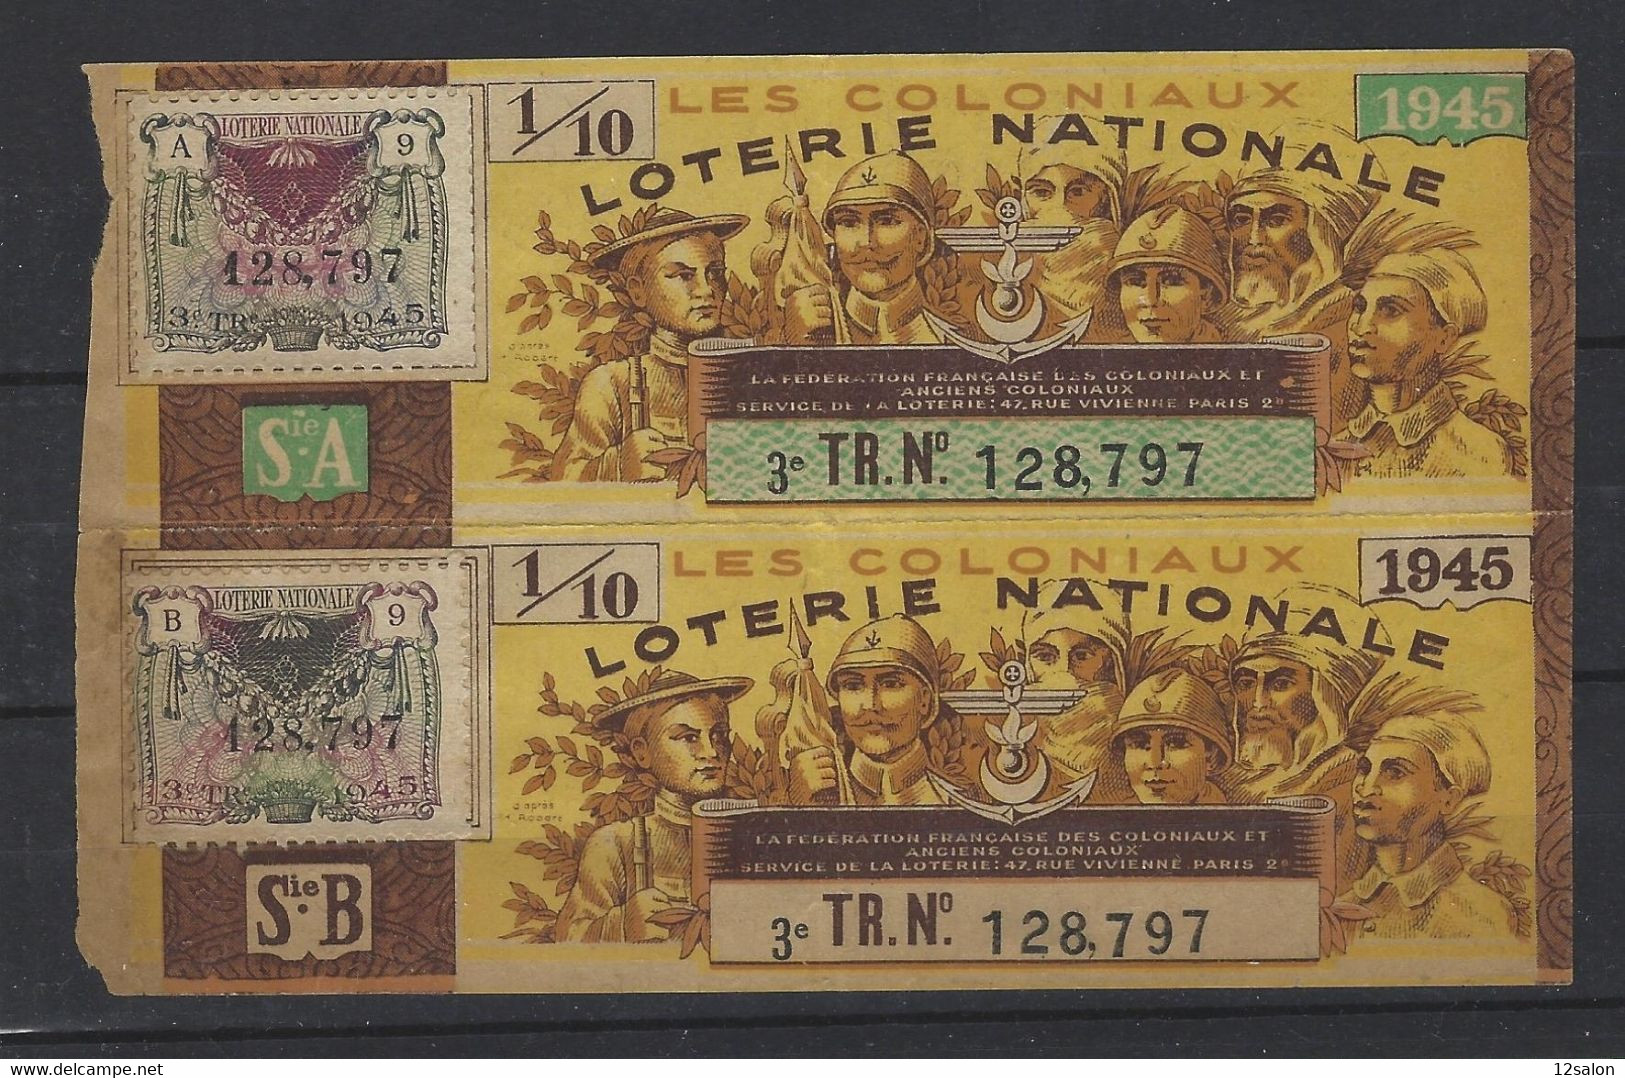 FRANCE LOTERIE NATIONALE LES COLONIAUX 1945 - Billetes De Lotería